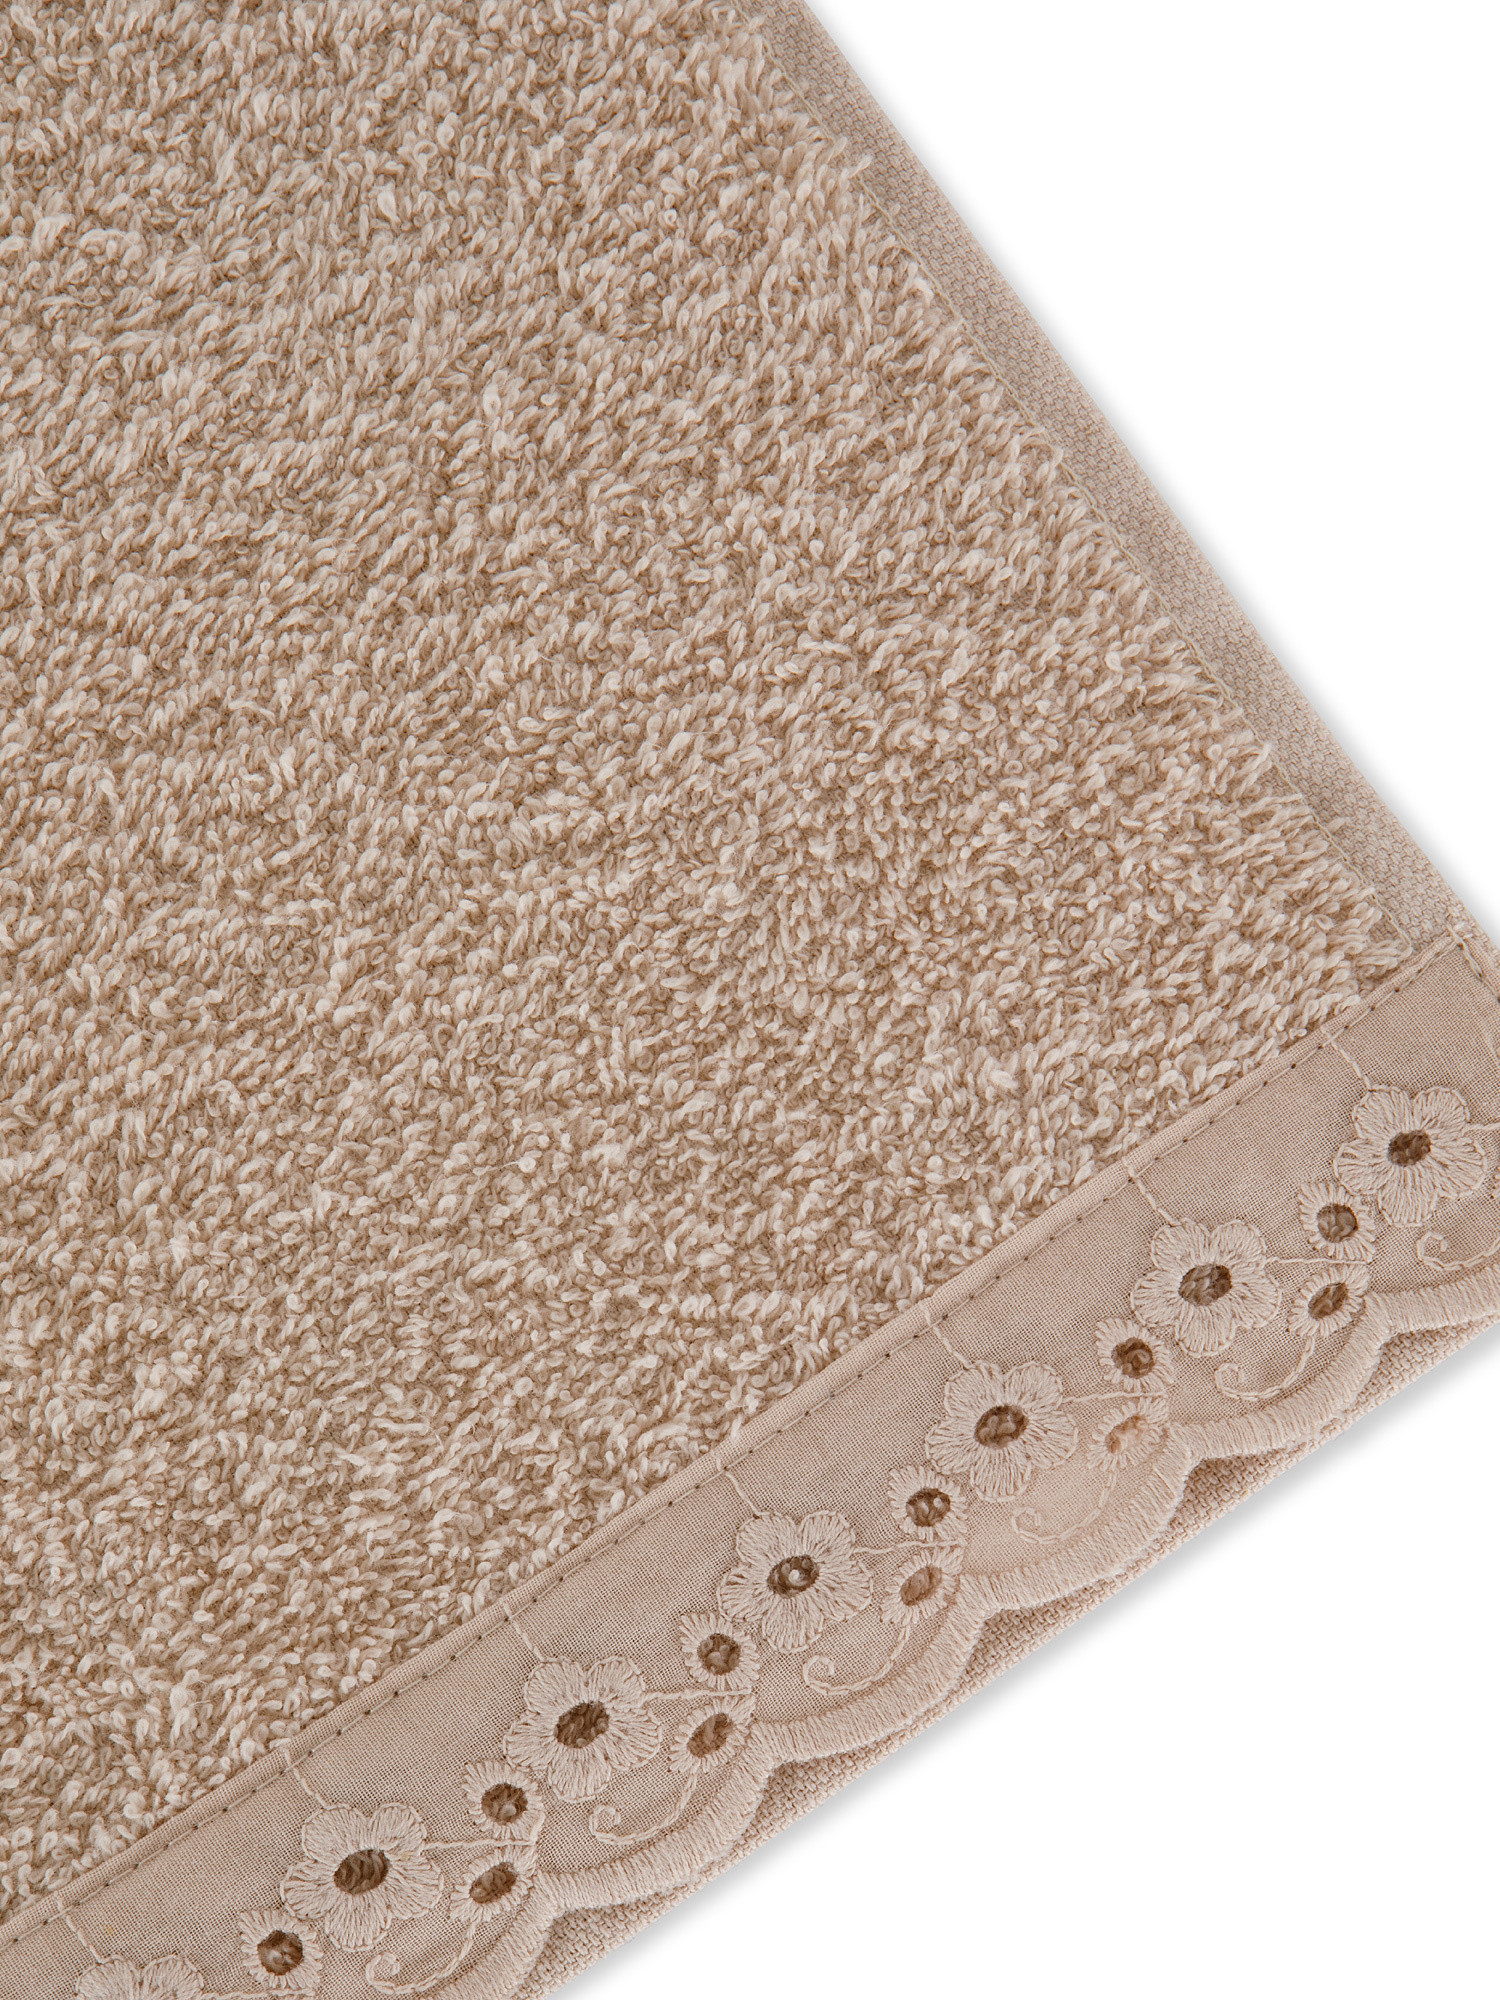 Asciugamano spugna di cotone bordo sangallo, Beige, large